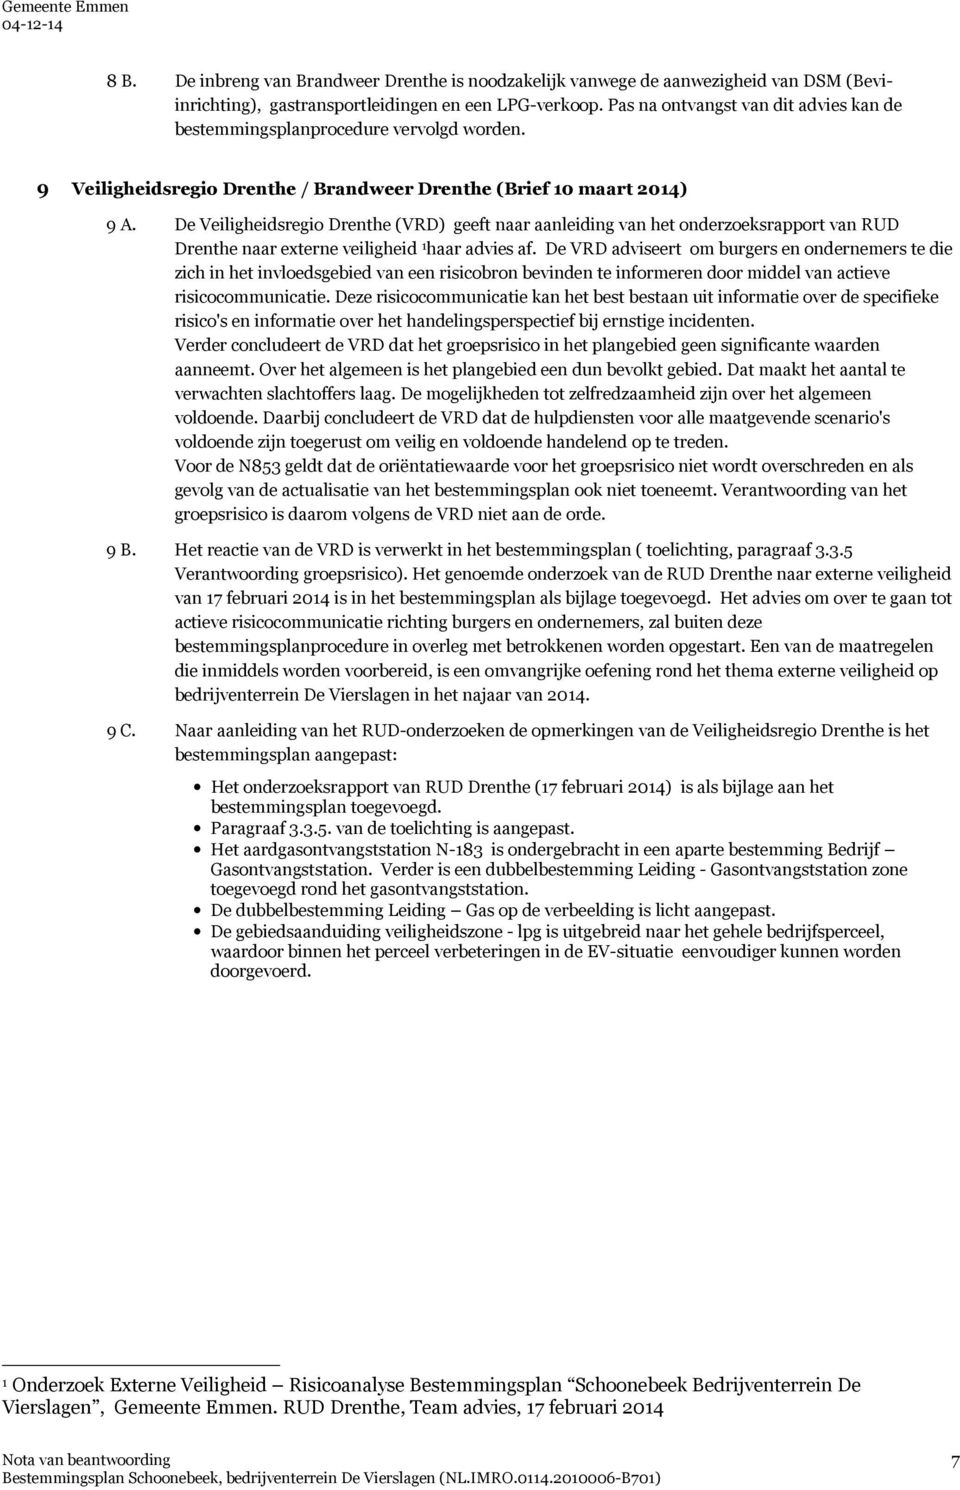 De Veiligheidsregio Drenthe (VRD) geeft naar aanleiding van het onderzoeksrapport van RUD Drenthe naar externe veiligheid 1 haar advies af.